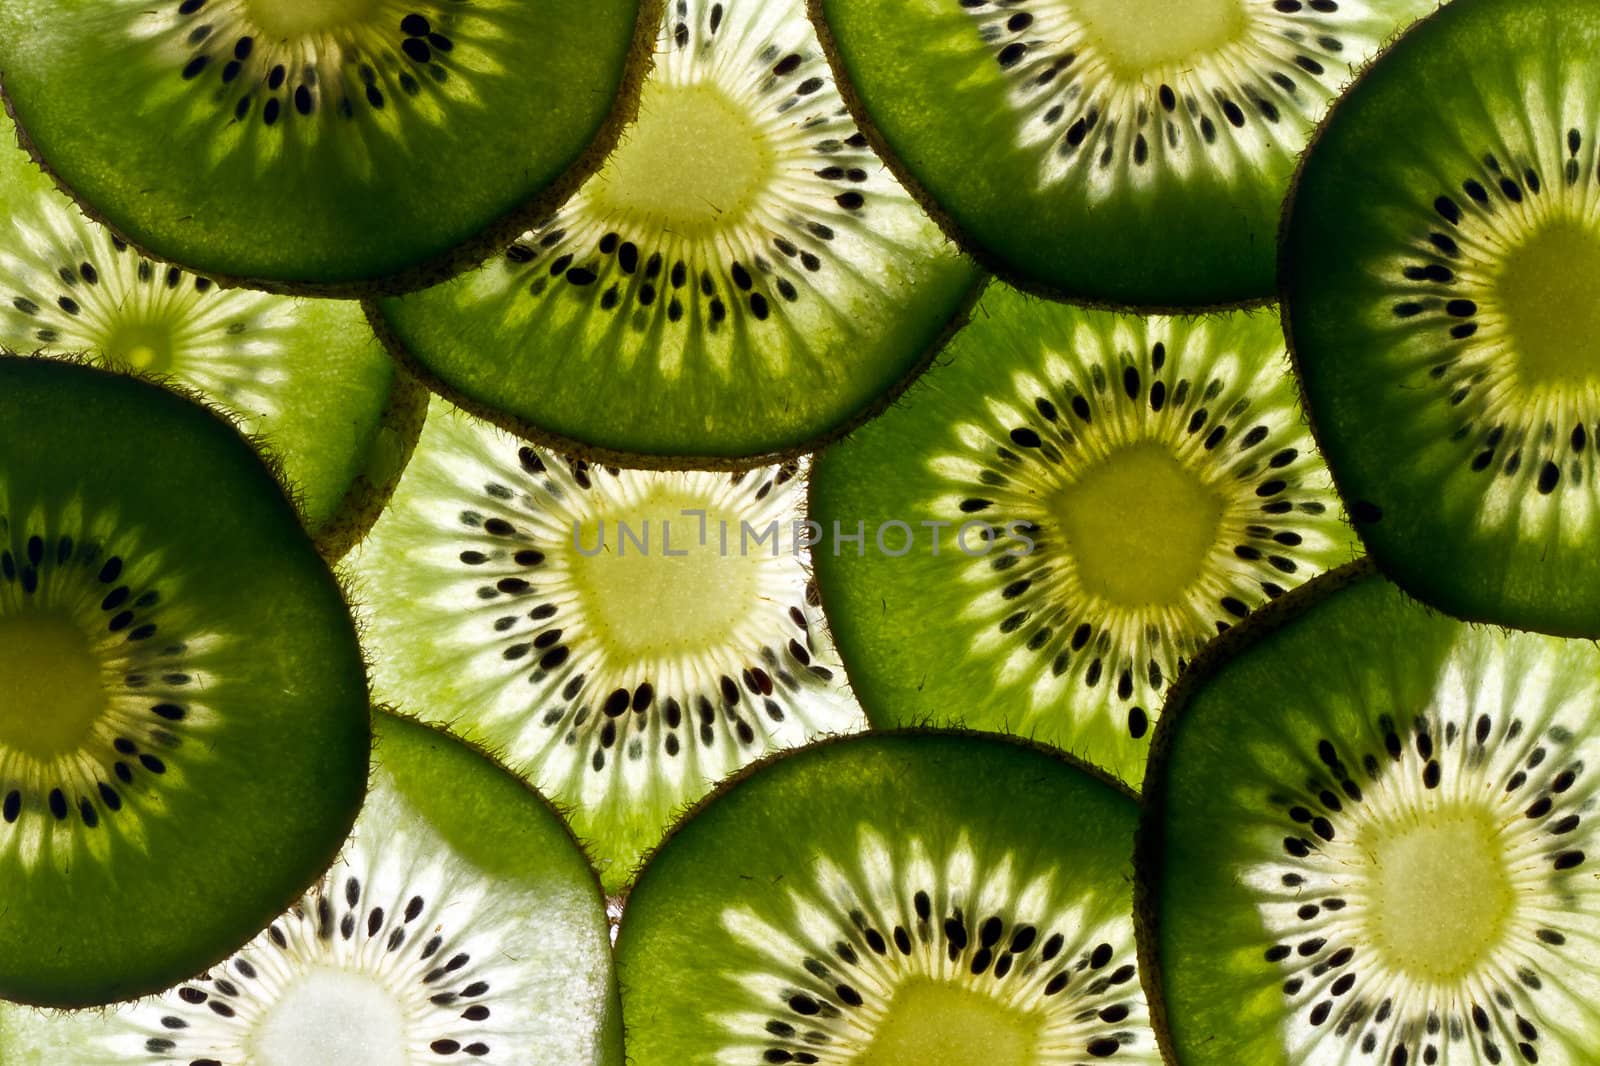 Many slices of fresh green kiwi fruit